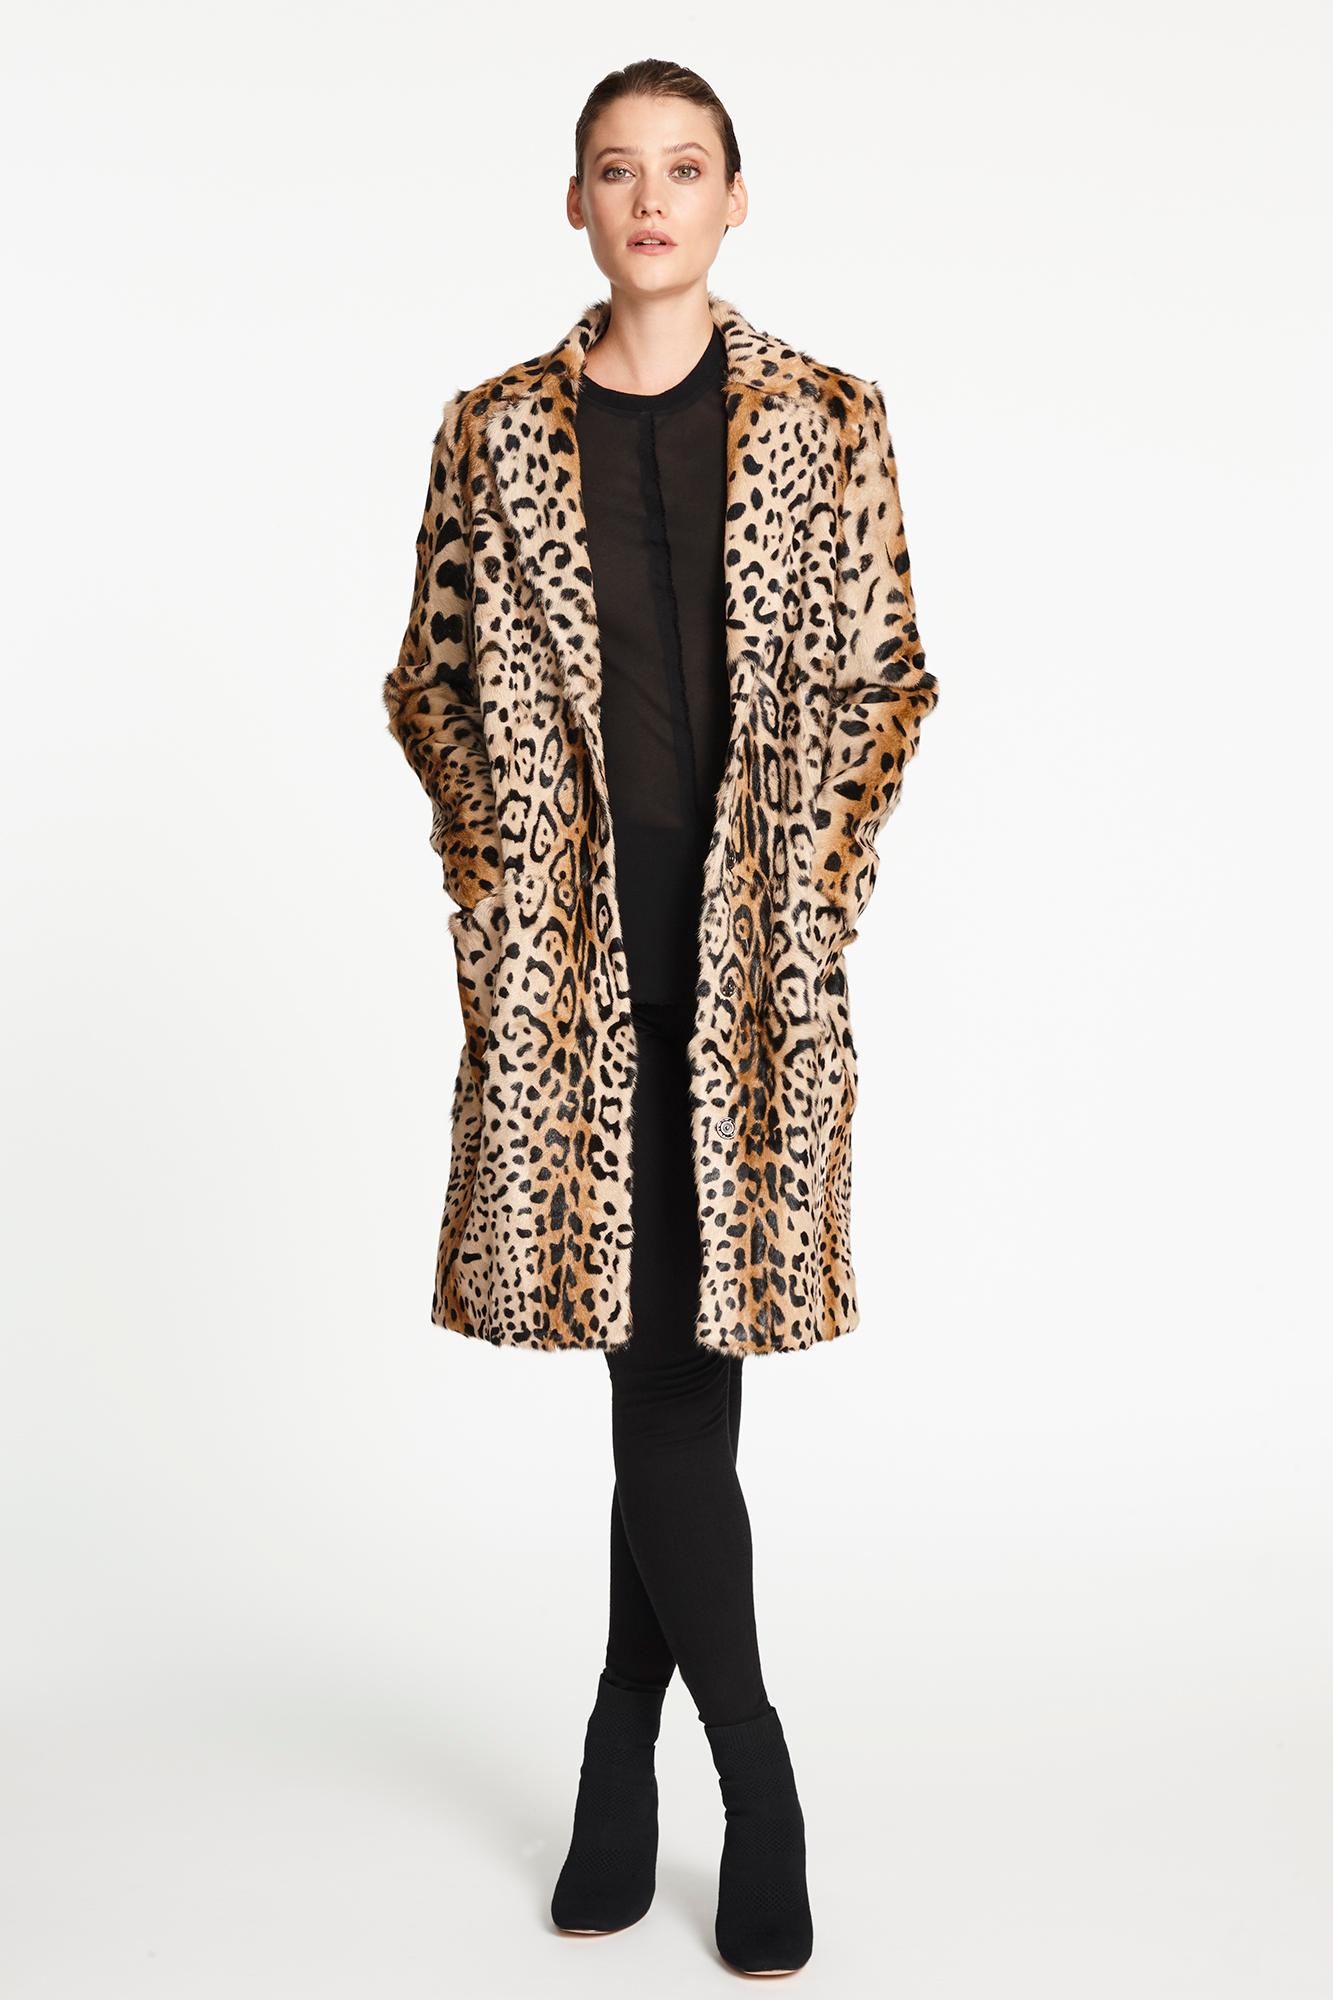 Women's Verheyen London Leopard Print Coat in Red Ruby Goat Hair Fur UK 10 